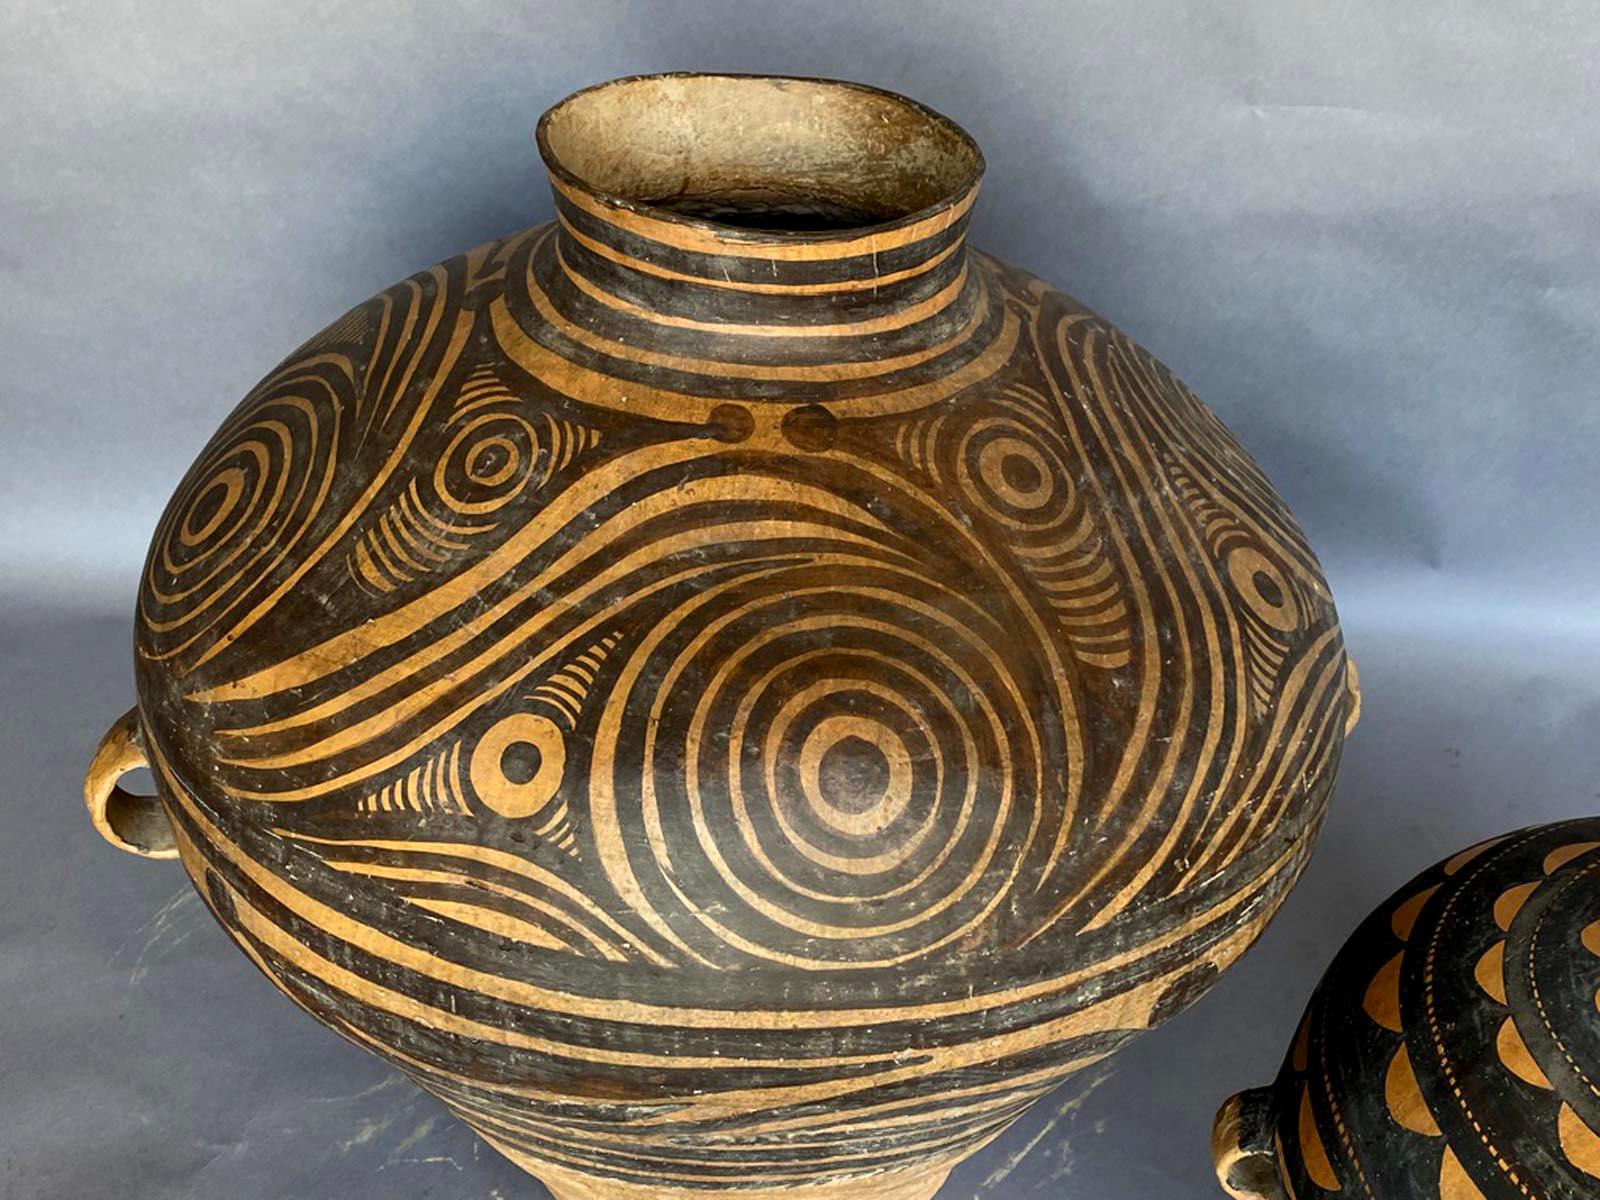 Deux pots en céramique chinoise de style néolithique moderne. Vendu séparément. Le grand pot a une petite fissure sur le fond qui a été réparée. Veuillez voir les photos détaillées
La gauche mesure 32 D x 29 H et le prix de liste est de 3 250 $
La